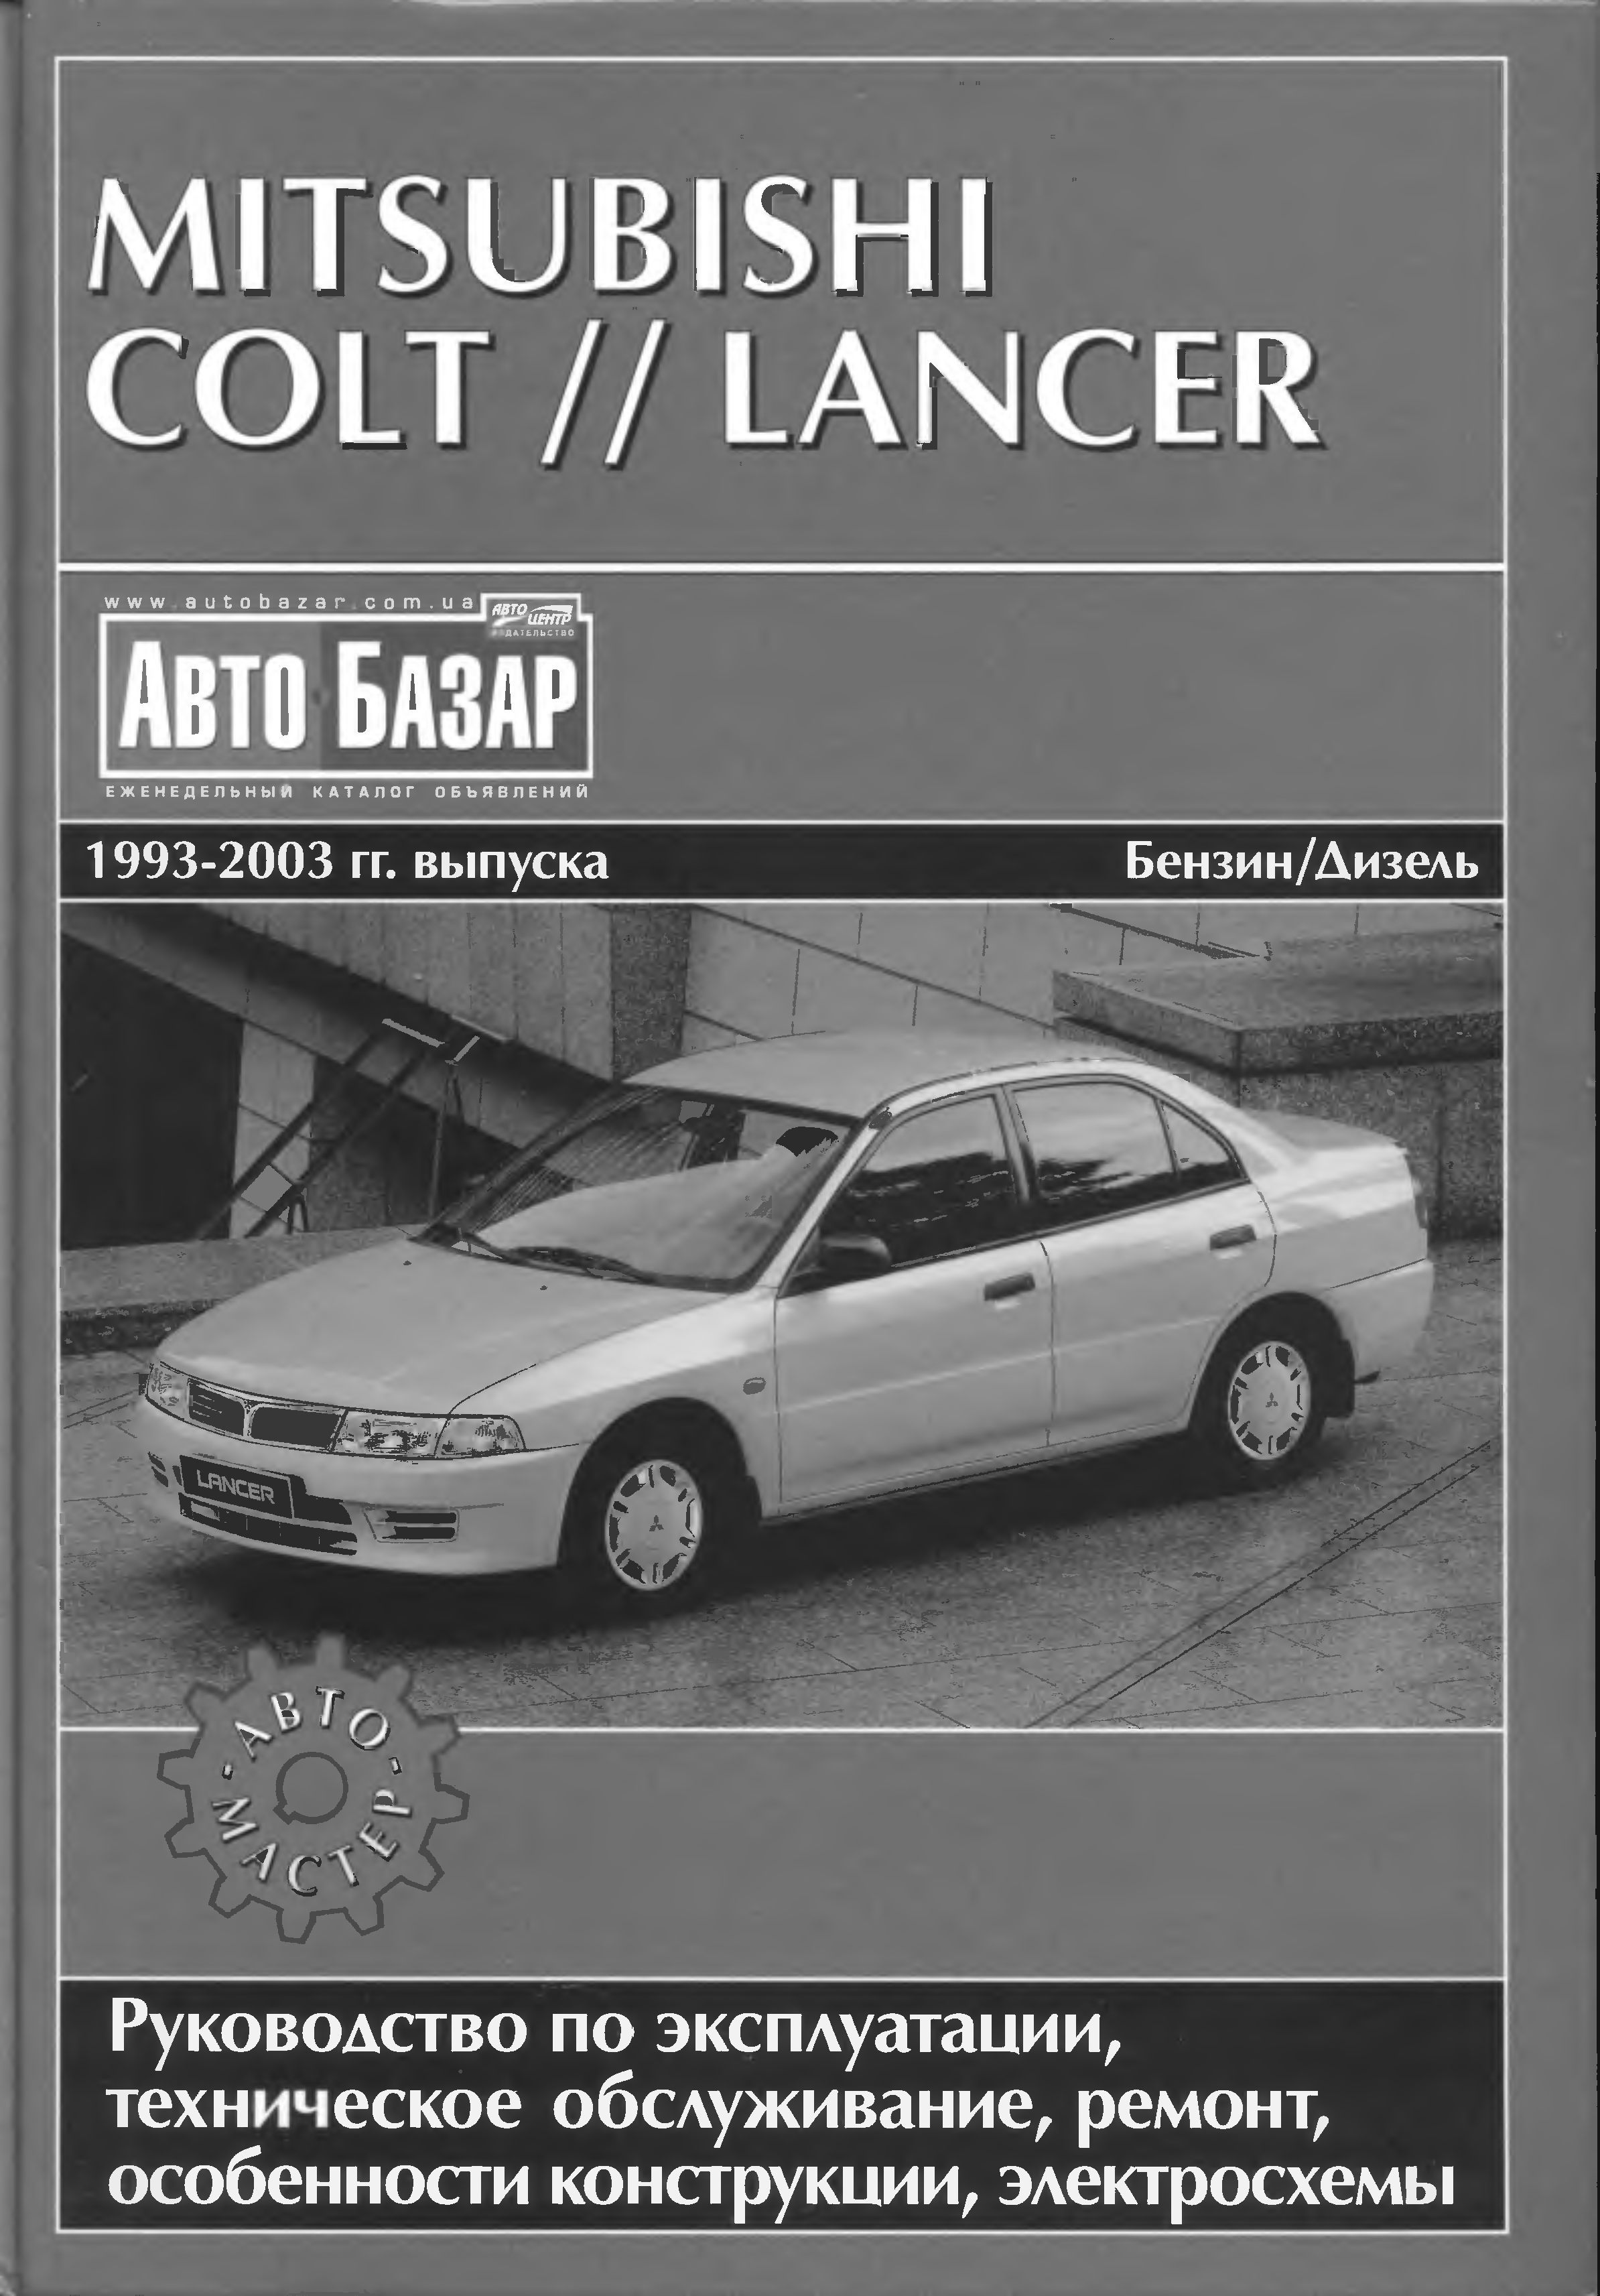 Эксплуатация мицубиси. Mitsubishi Colt // Lancer 1993-2003. Книга Mitsubishi Colt 1992 года. Мануал по ремонту Lancer 5. Mitsubishi Lancer Colt.